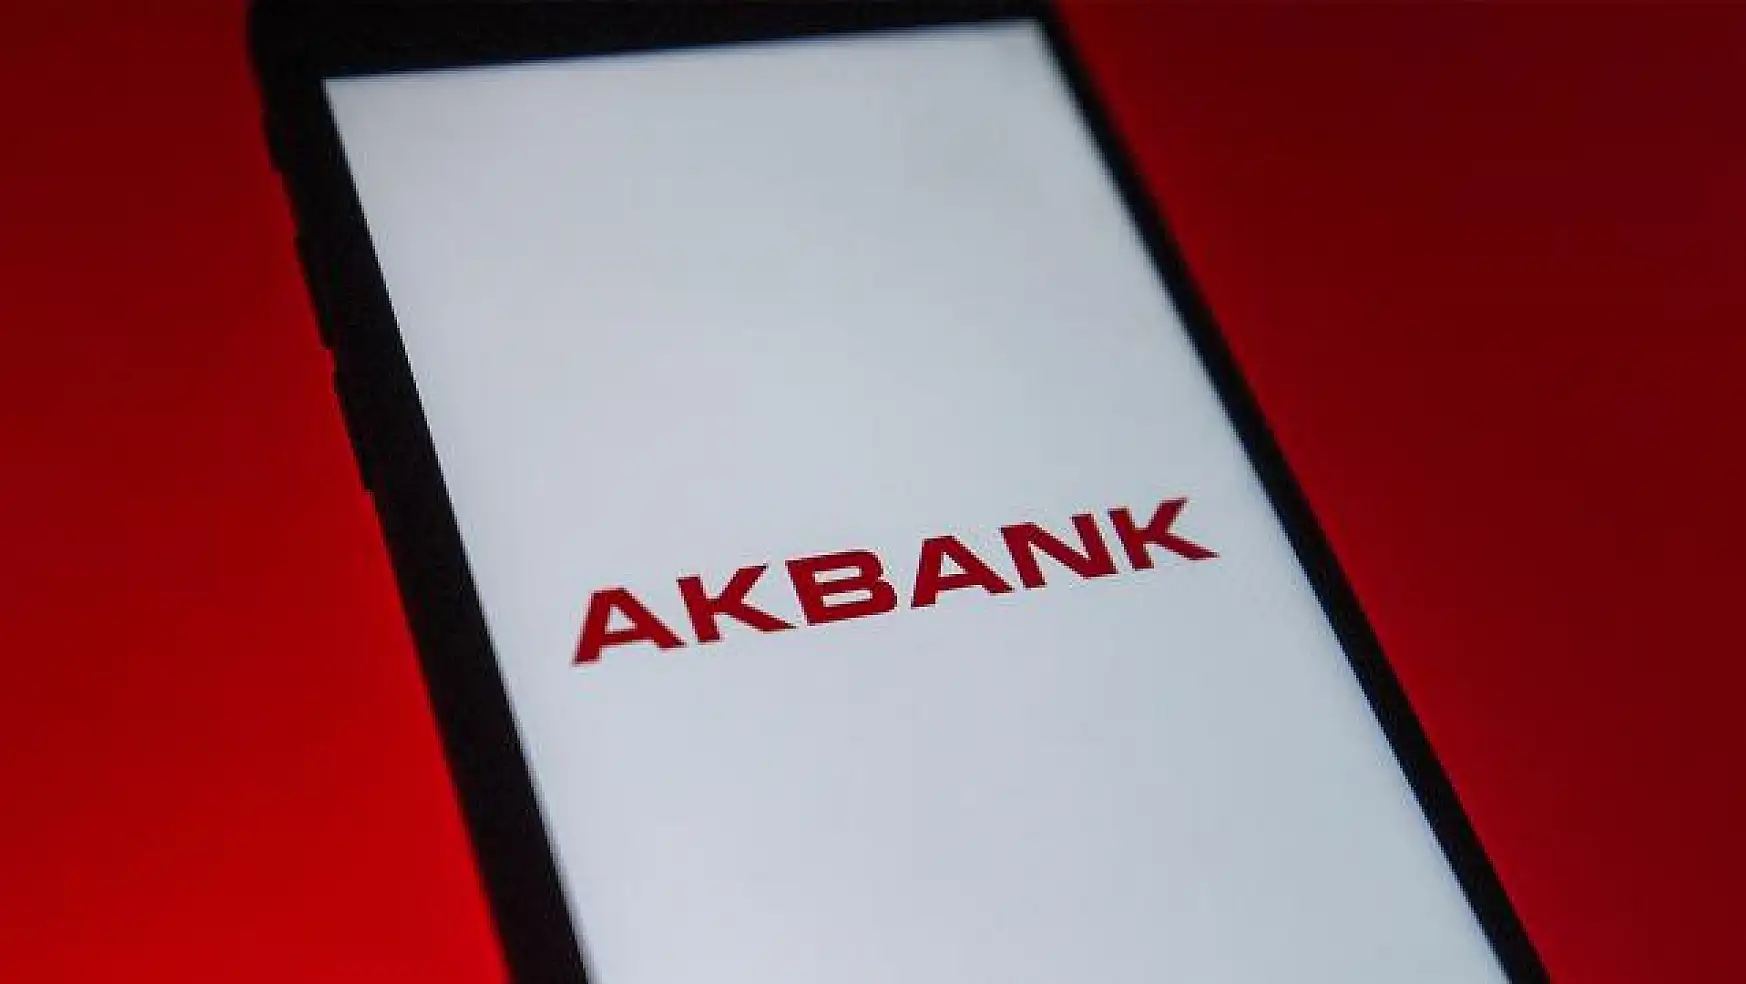 Akbank'tan son dakika açıklaması geldi! Bilgi ve kayıtlarda güvenlik problemi var mı?